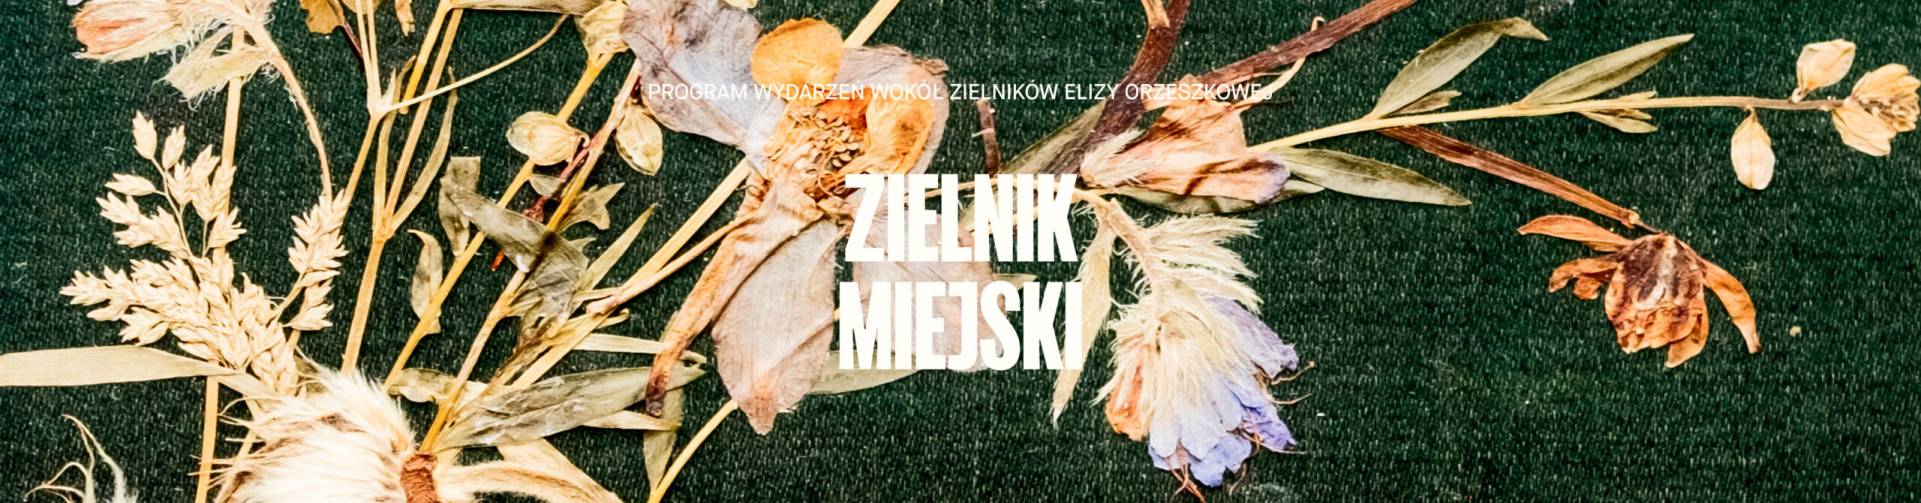 zdjęcie: na zielonym jedwabnym suknie kompozycja z suszonych kwiatów autorstwa Elizy Orzeszkowej